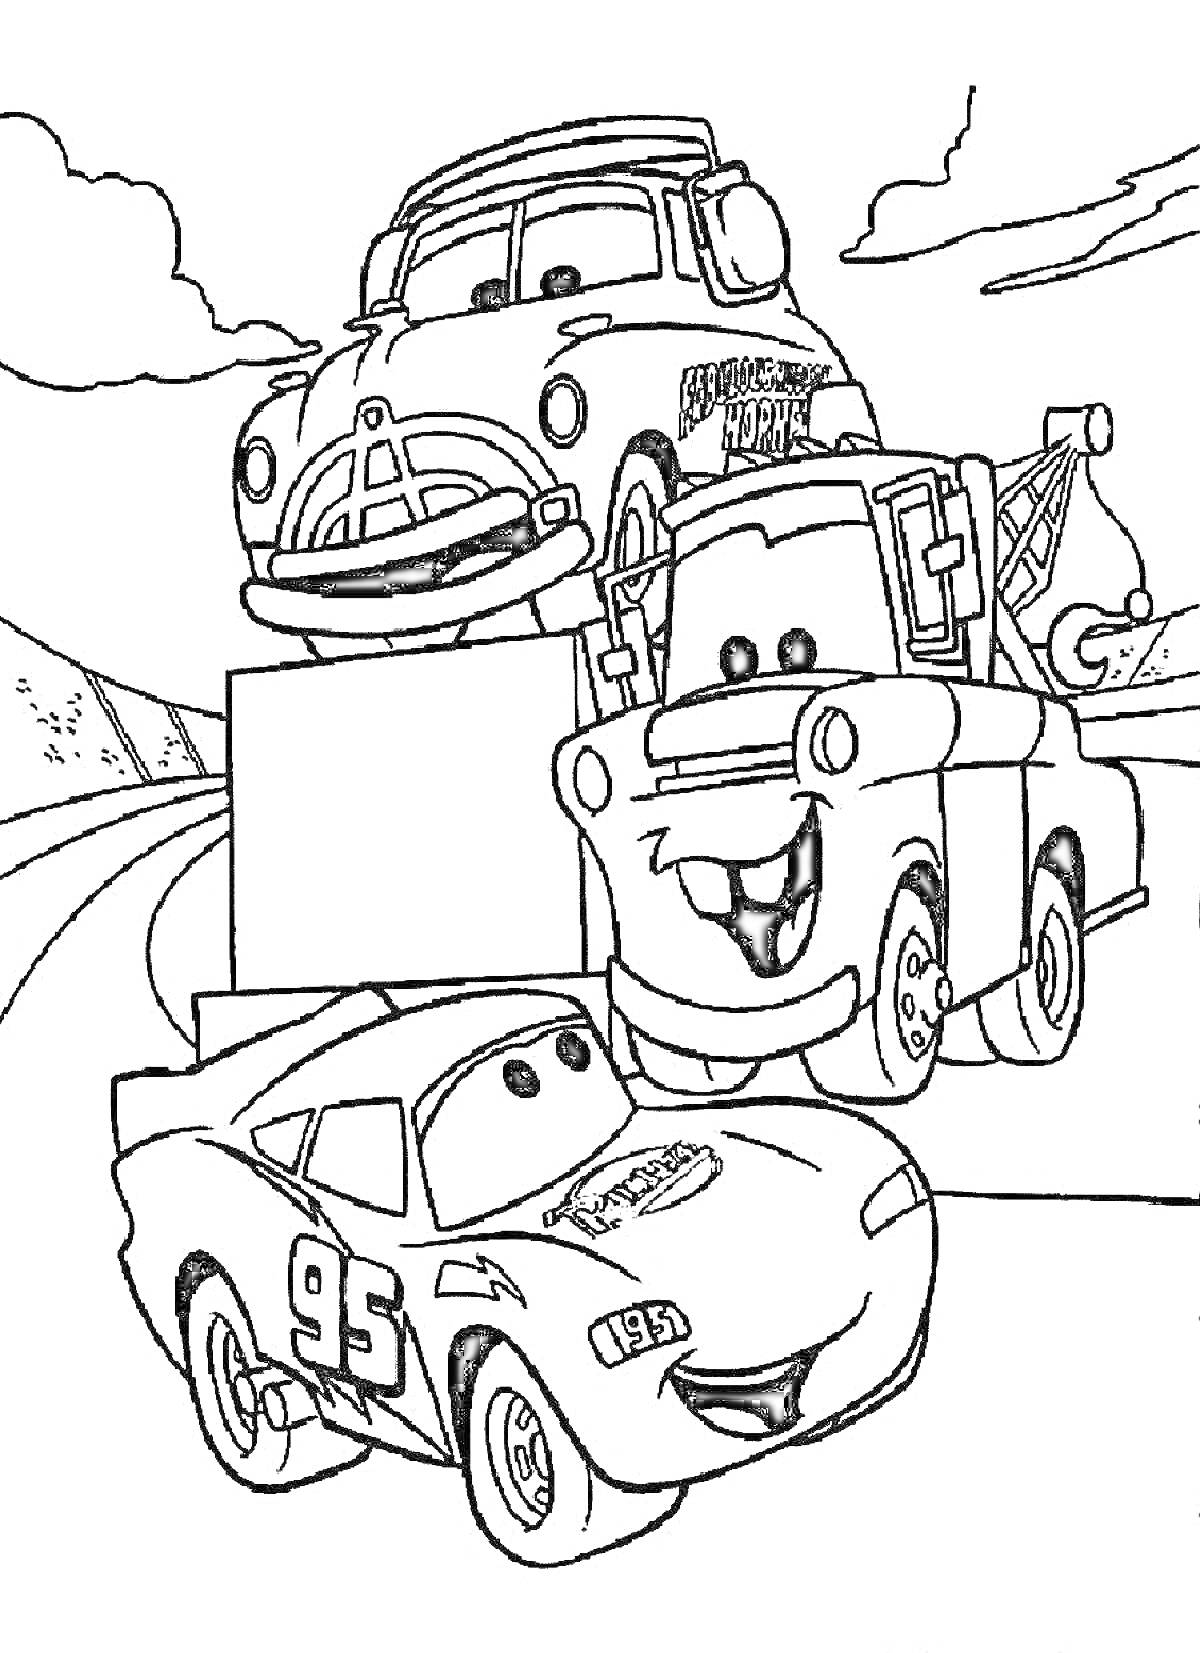 Раскраска Машины с Маквином, Док Гадсон, Мэтр на дороге с горами на заднем плане